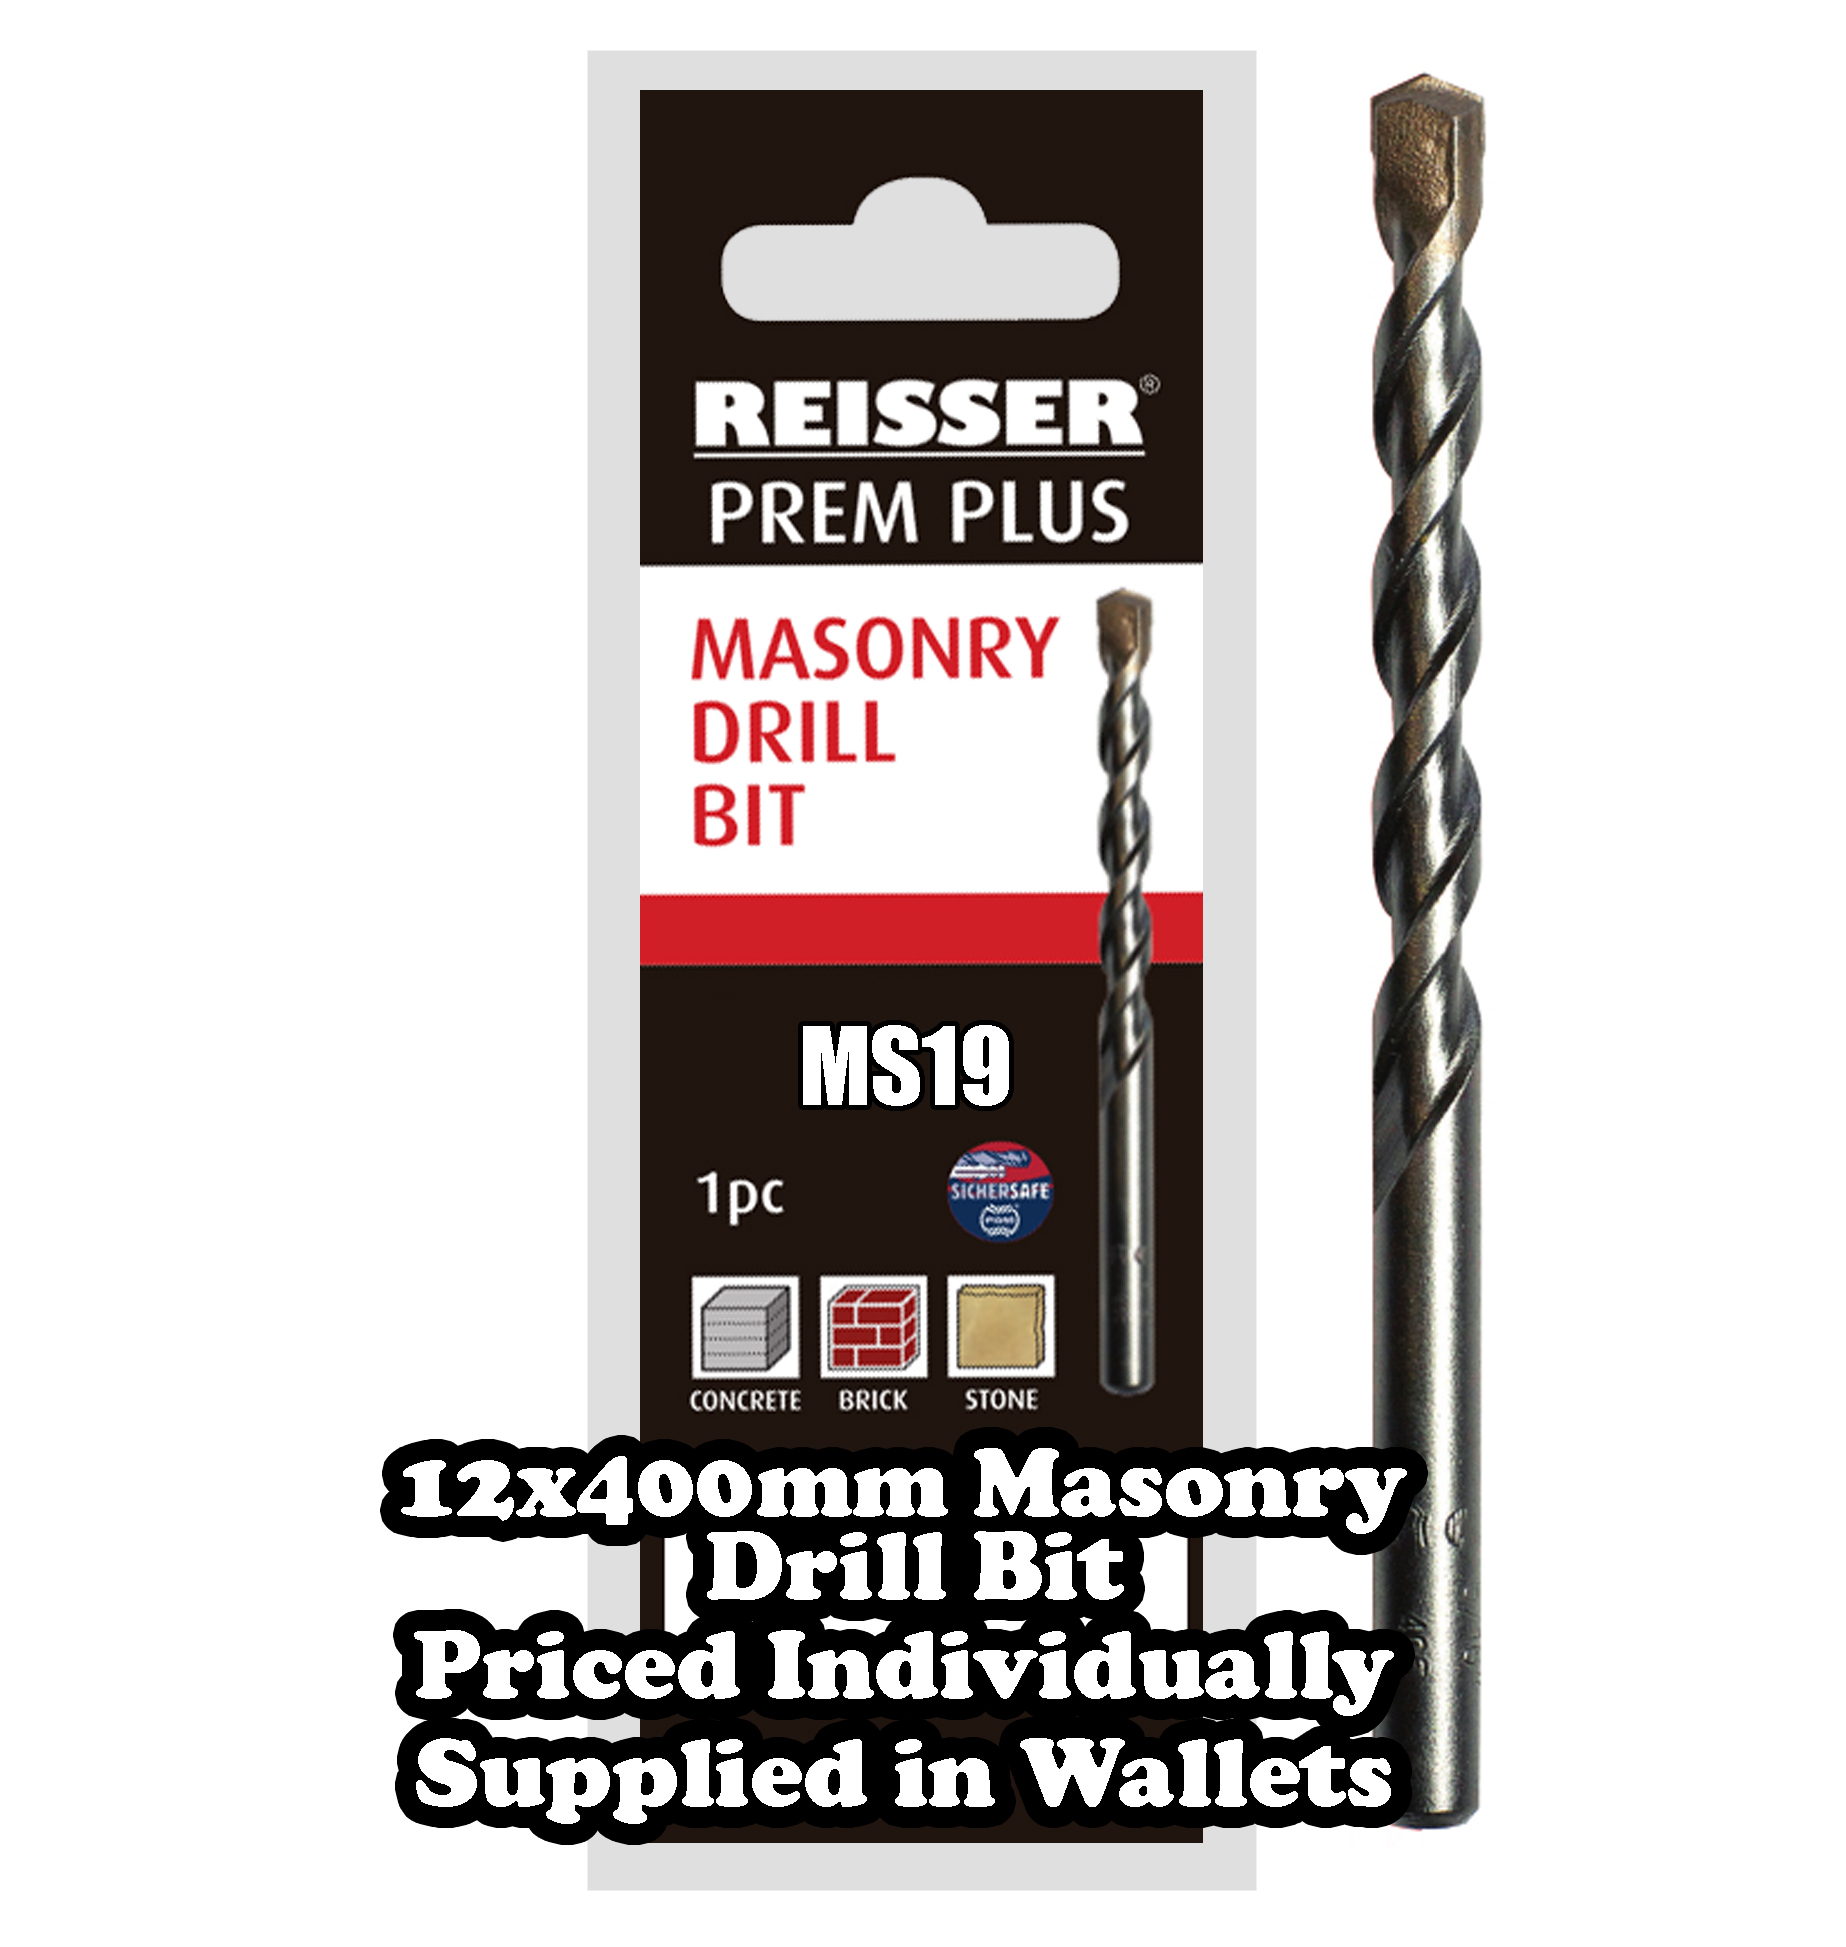 12mm x 400mm Masonry Drill Bit